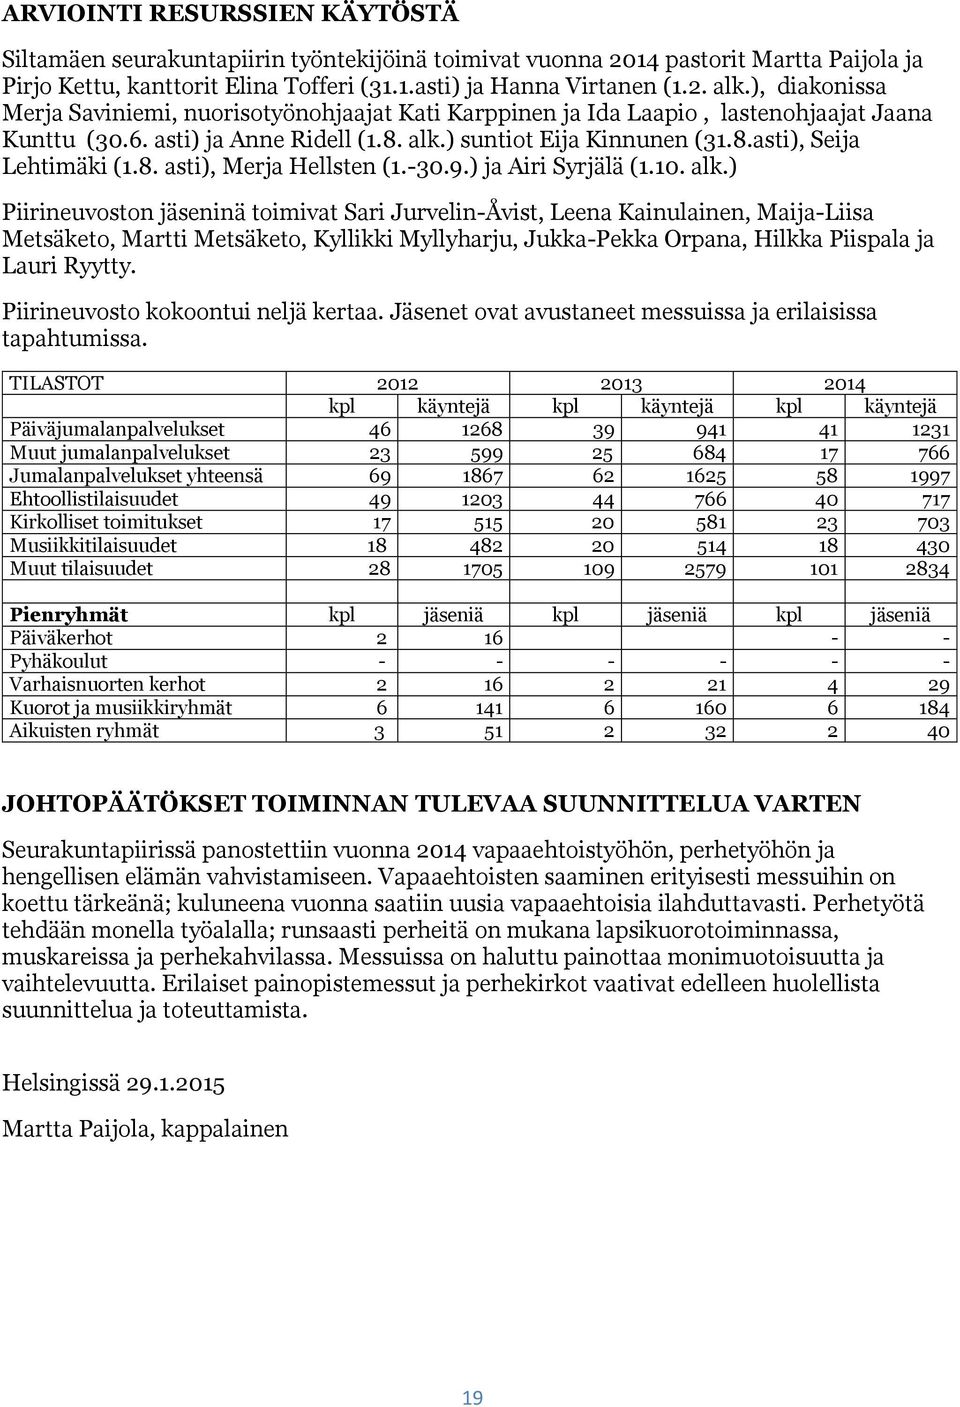 8. asti), Merja Hellsten (1.-30.9.) ja Airi Syrjälä (1.10. alk.